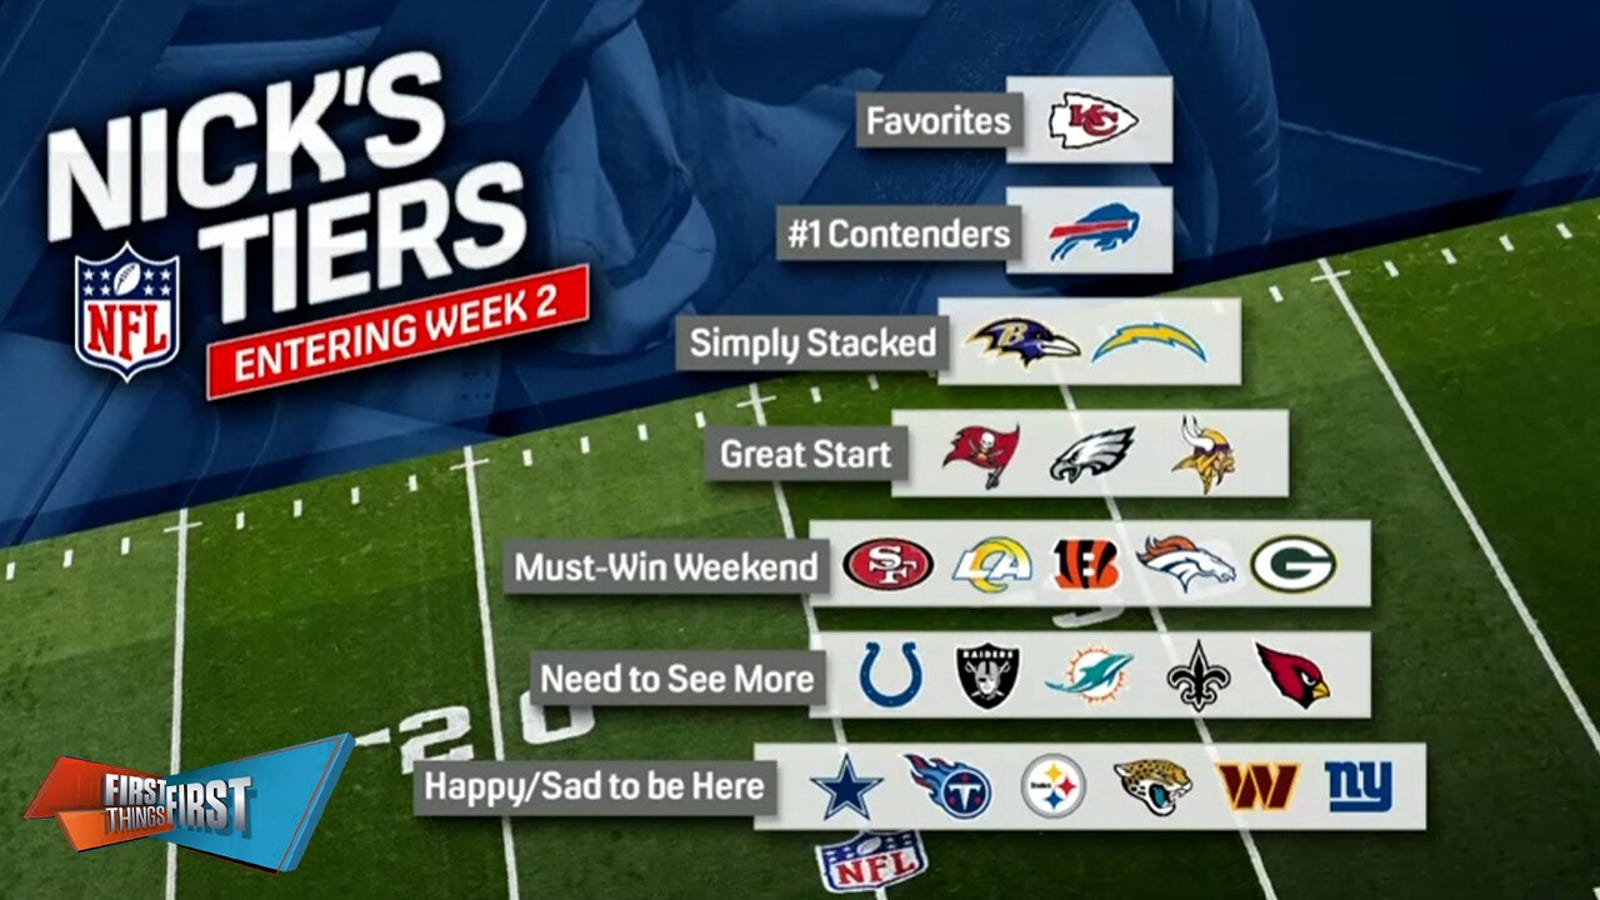 Chiefs, Bills top Nick's NFL tier heading into Week 2